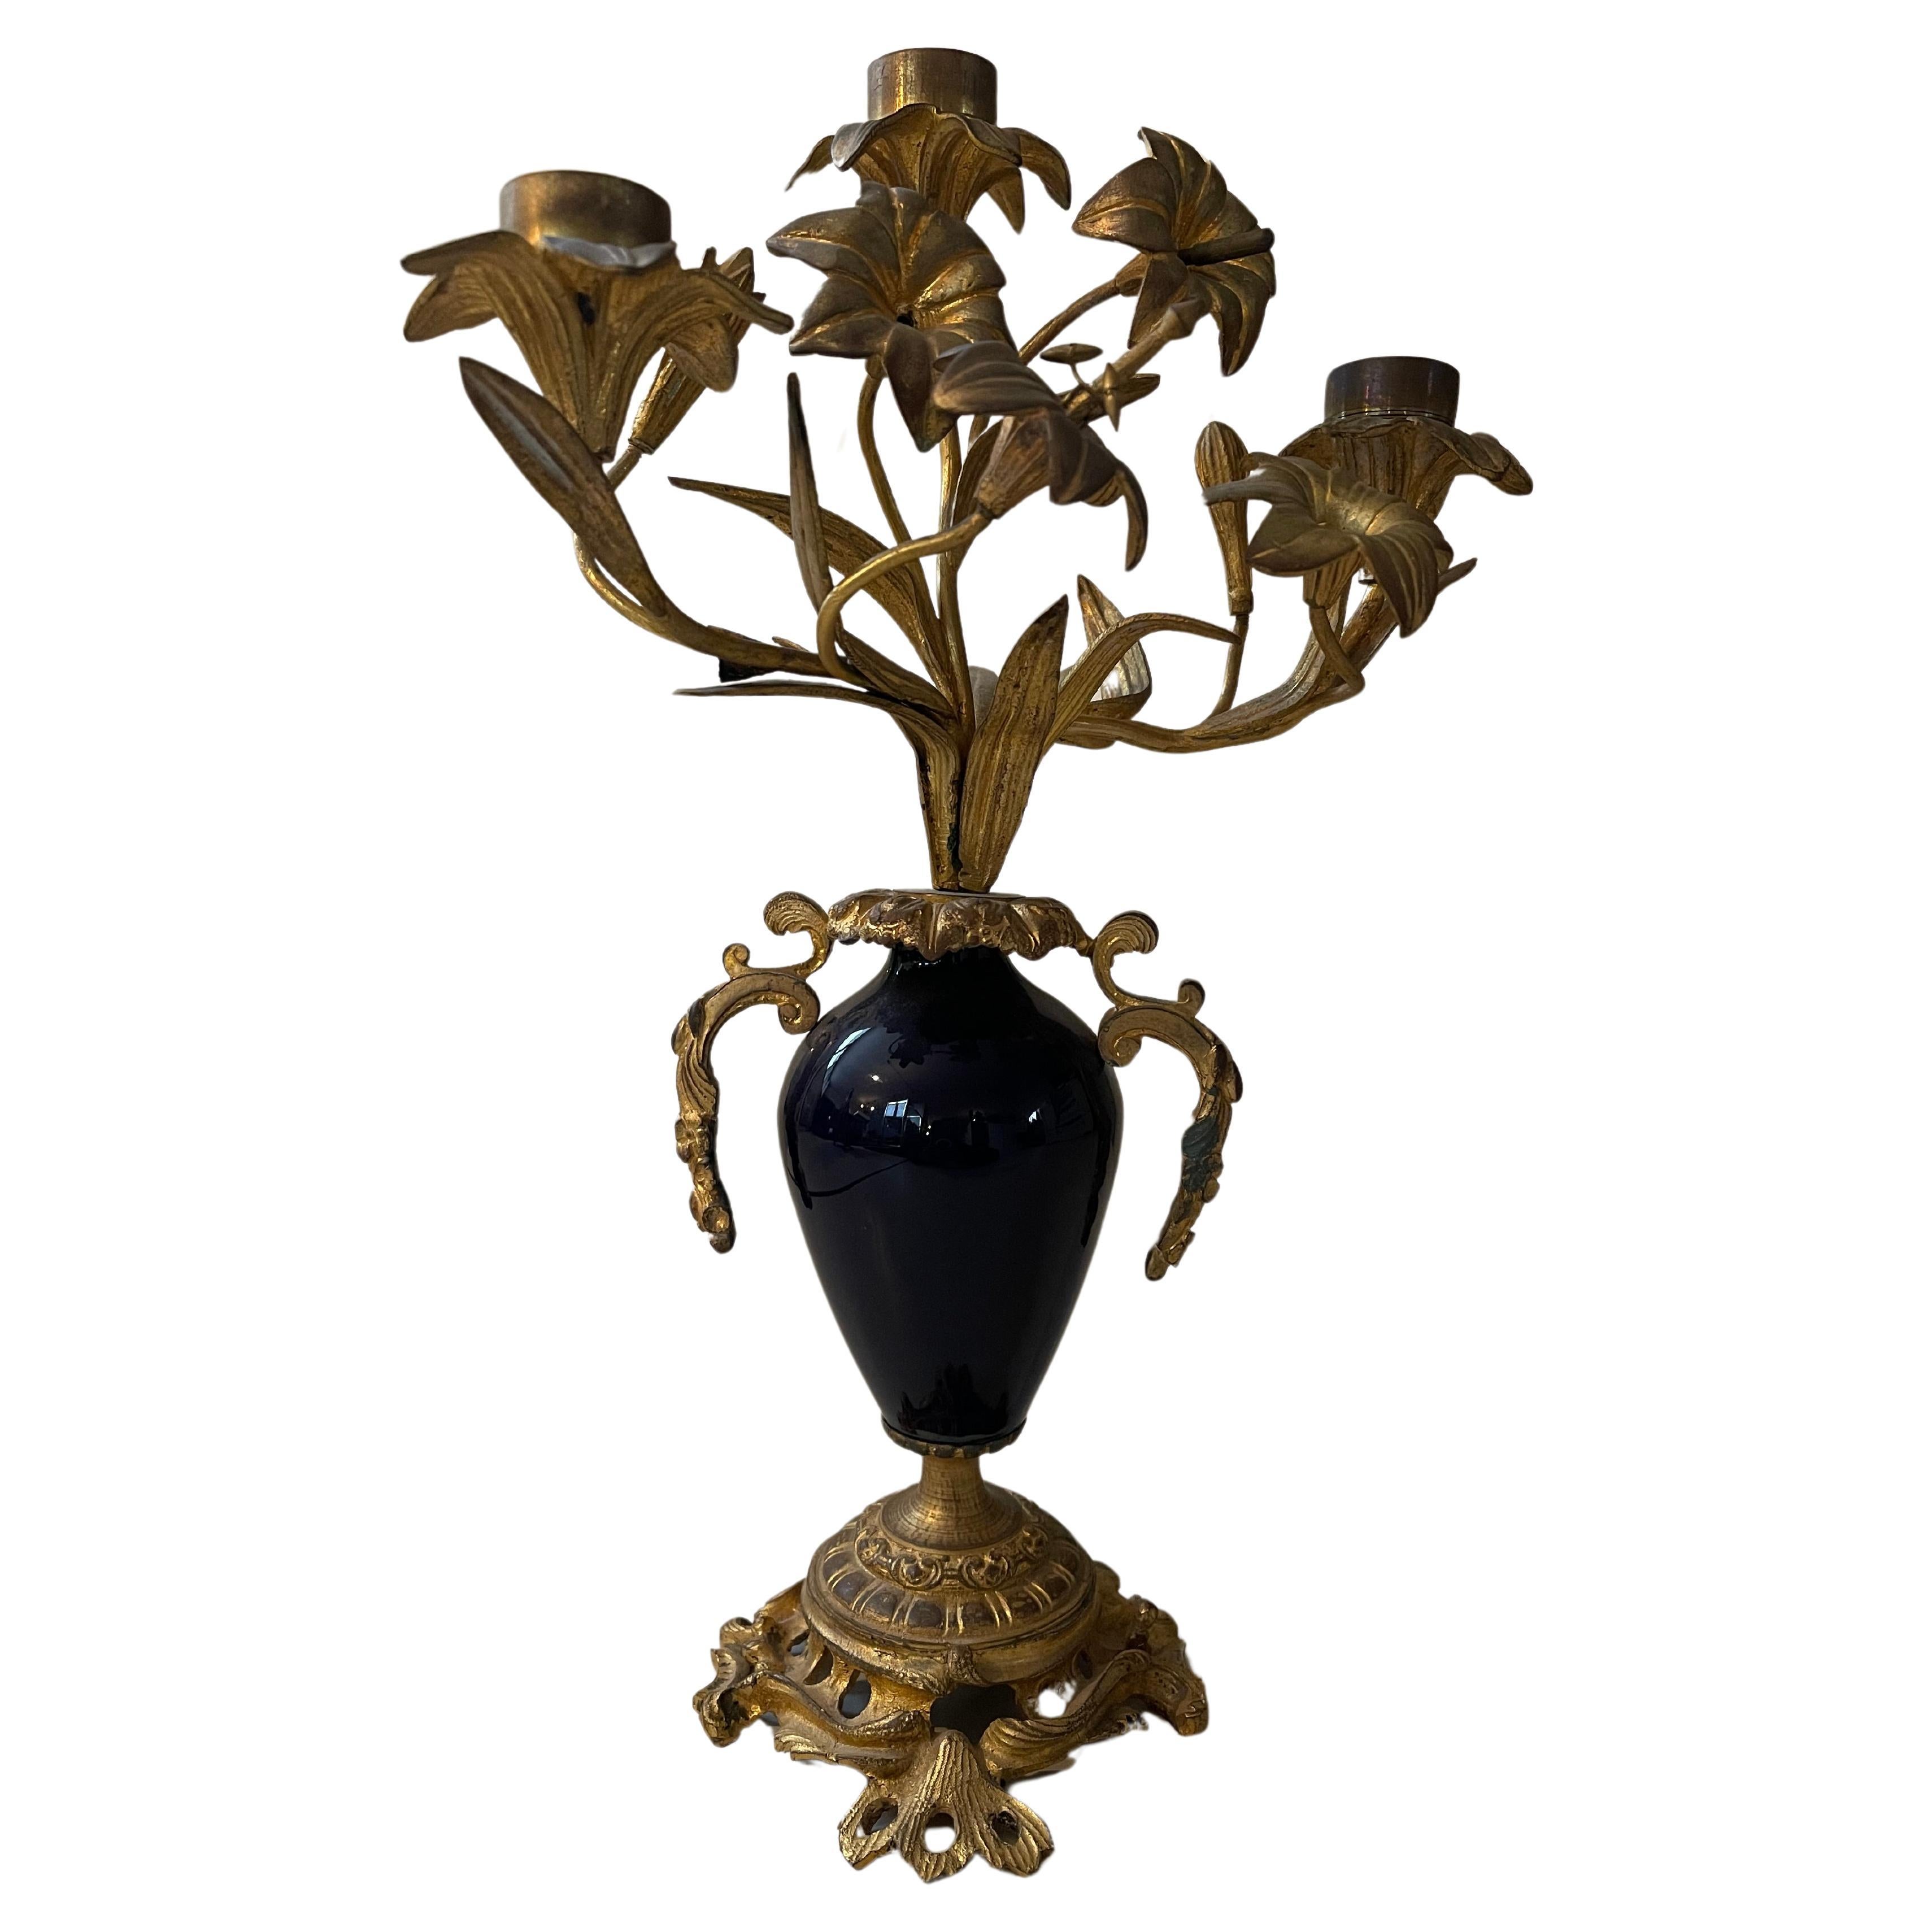 Antique bronze and porcelain paris style candelabra